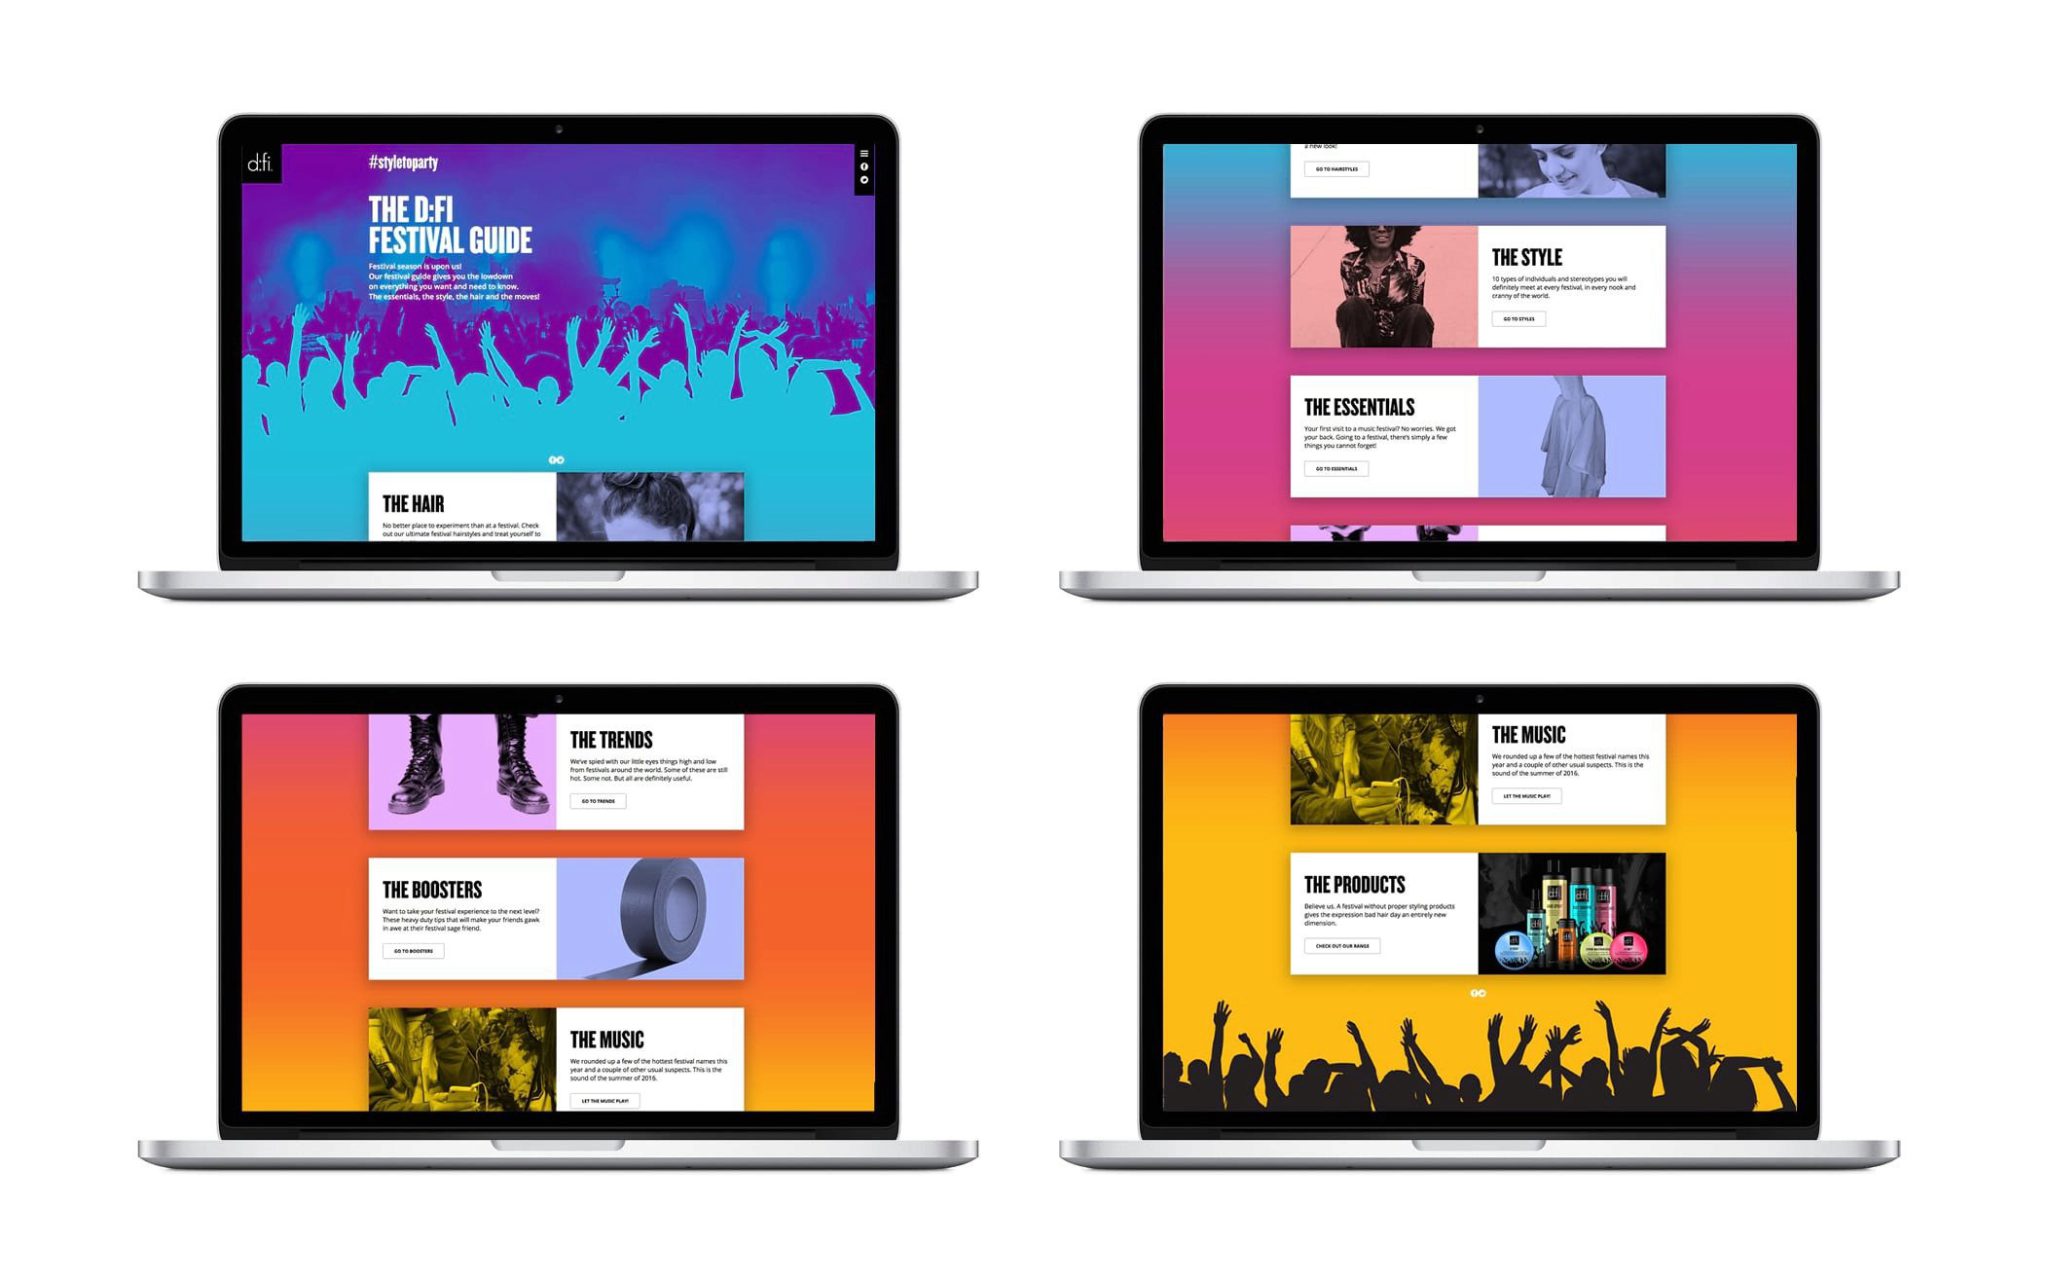 Uppfällda laptops visar d:fi hemsida med deras kampanj